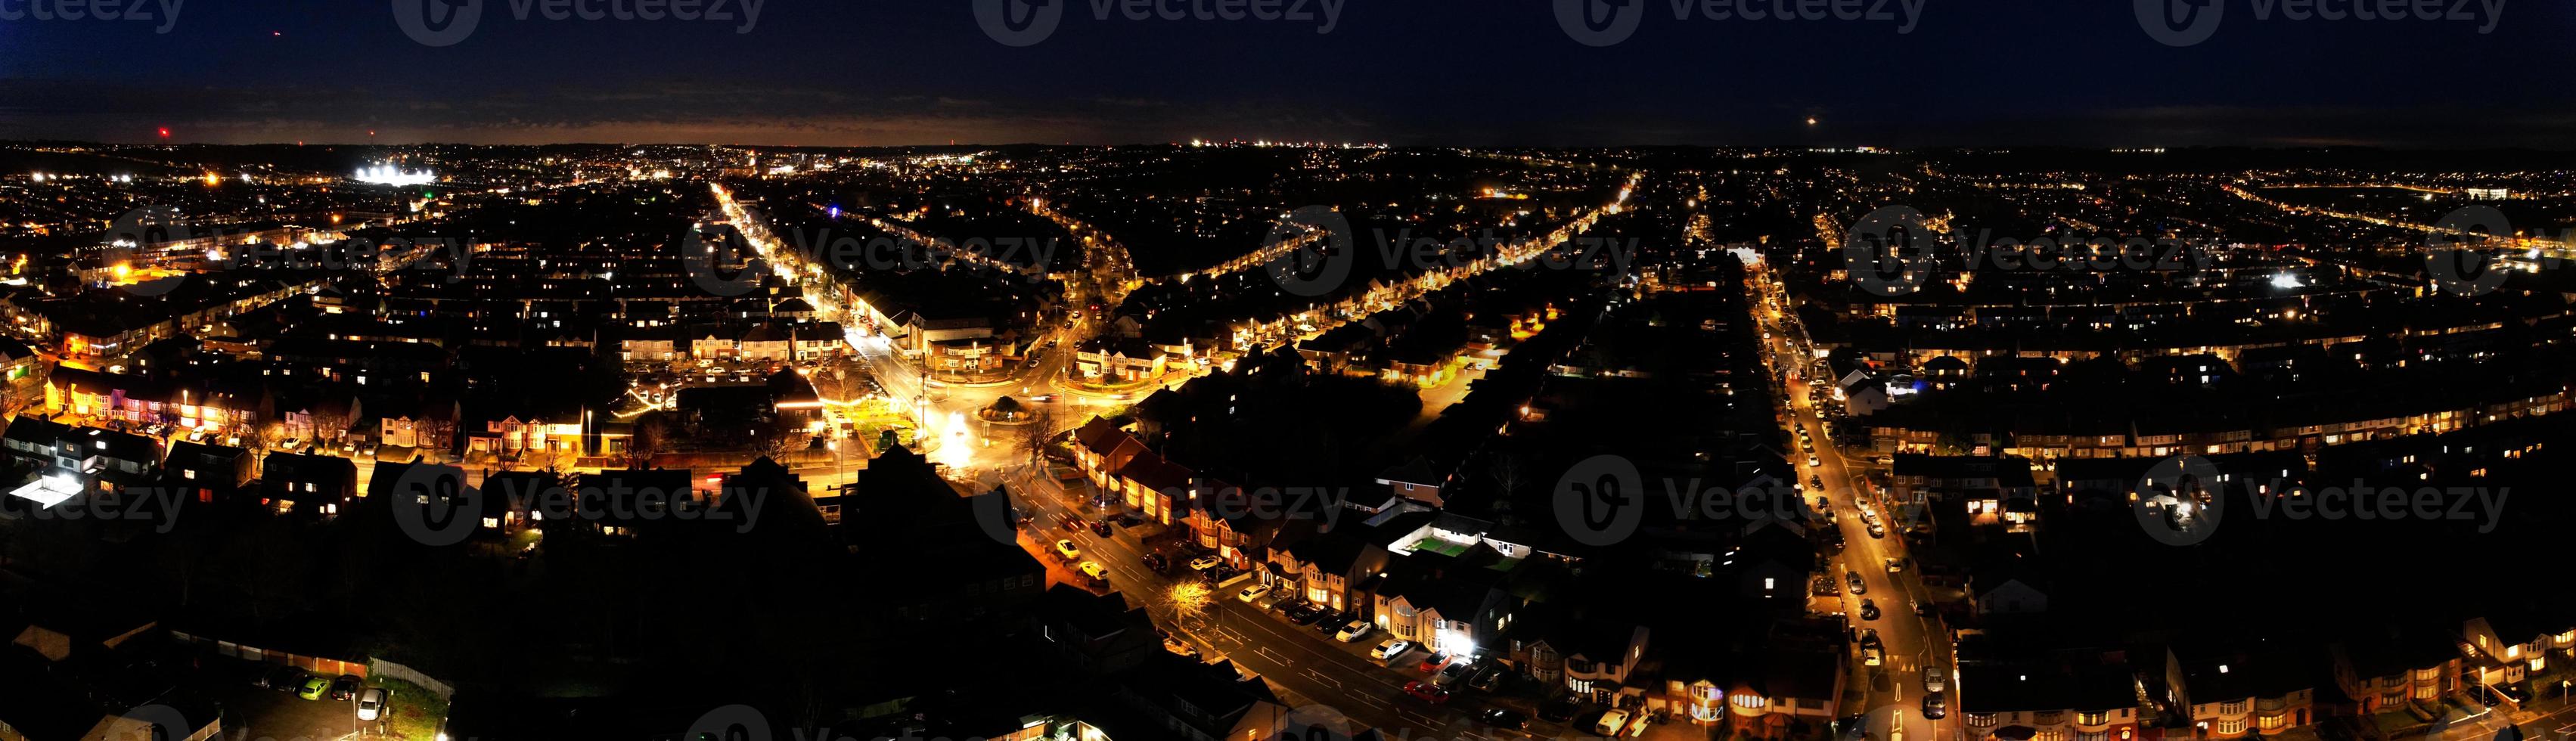 schöne nächtliche luftaufnahme der britischen stadt, hochwinkel-drohnenaufnahmen der stadt luton in england großbritannien foto